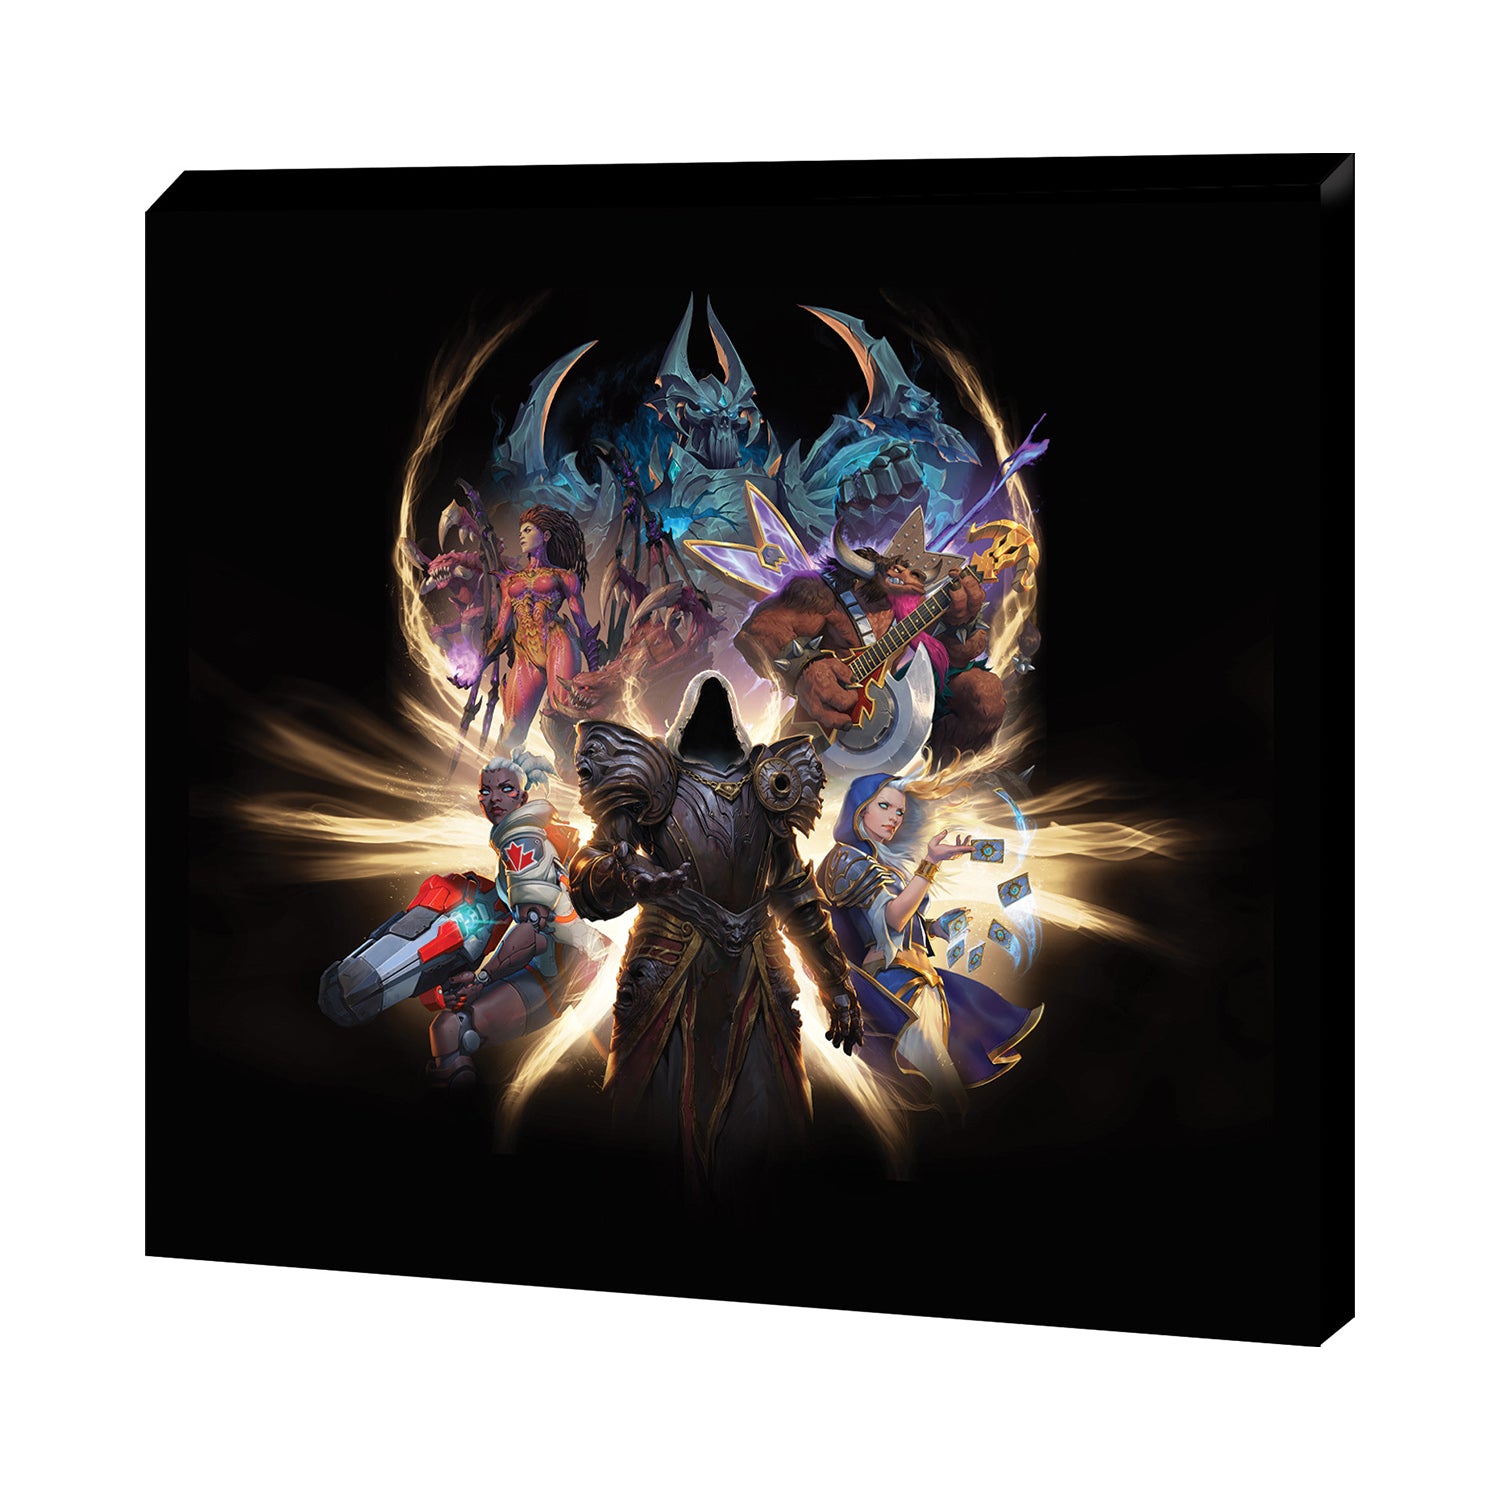 Blizzard Gear Fest 2022 Key Art 45.7 x 50.8 cm Canvas - Front View